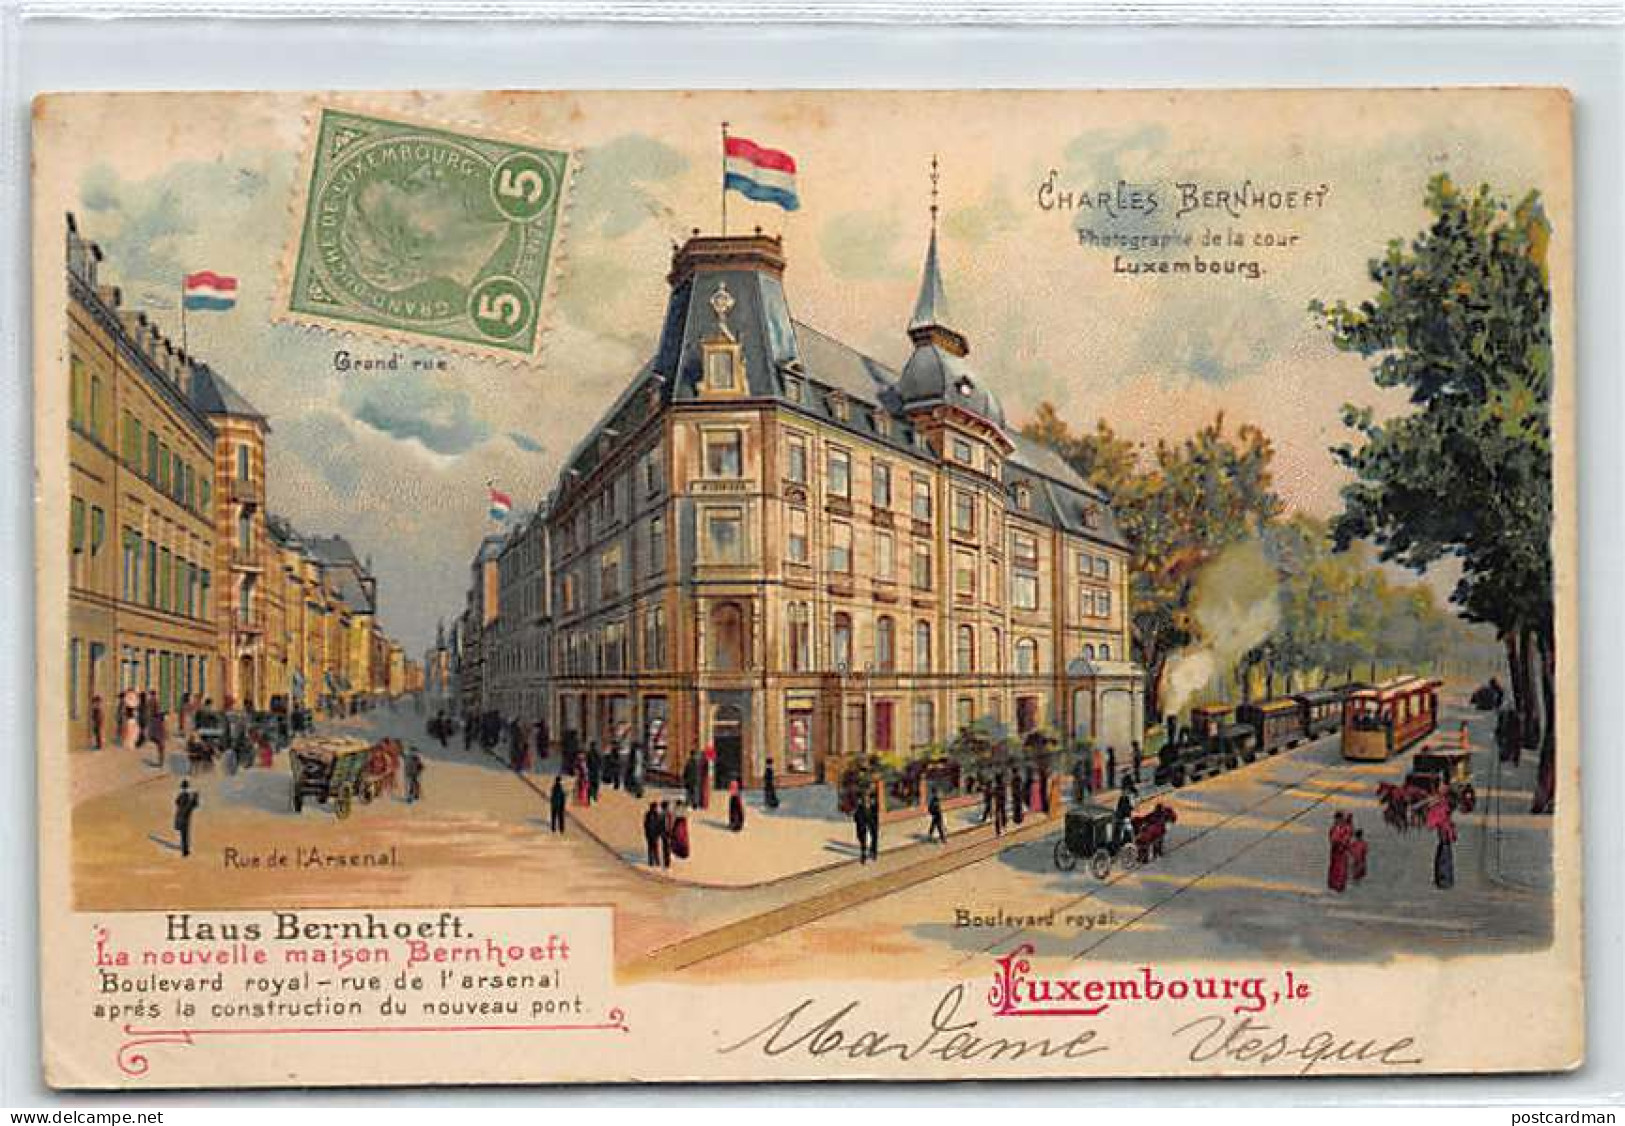 Luxembourg - Ville - Carte Publicitaire Litho Maison Haus Bernhoeft, Boulevard Royal Et Rue De L'Arsenal. - Luxemburg - Stadt